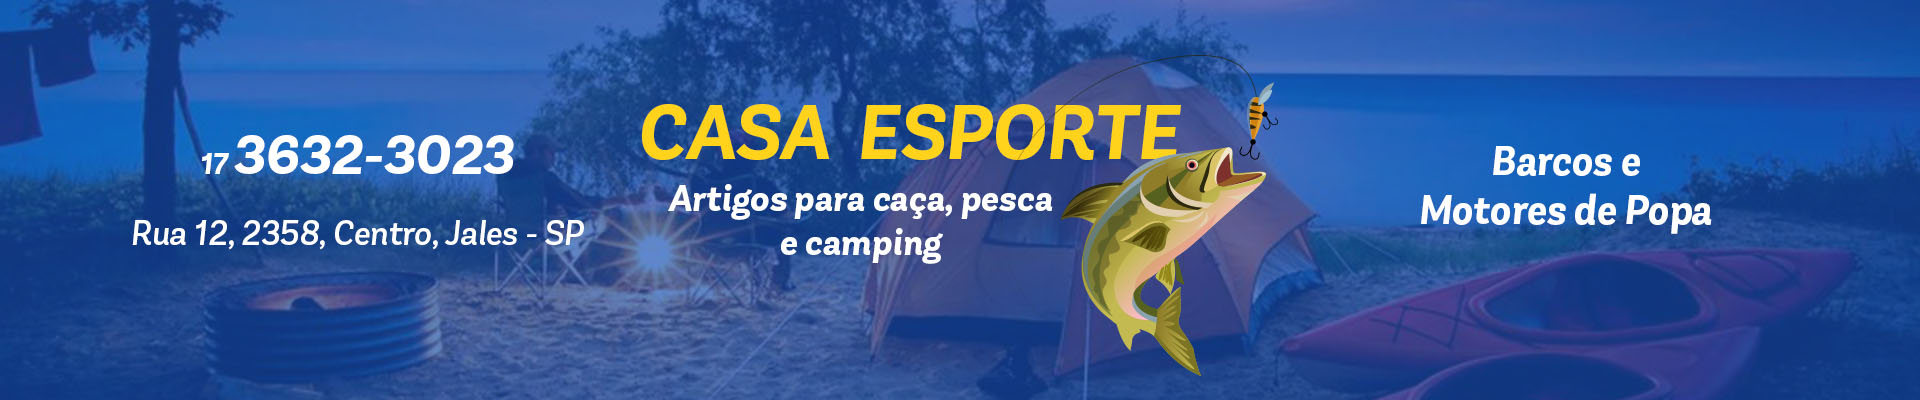 Casa Esporte - Artigos para caça, pesca e camping